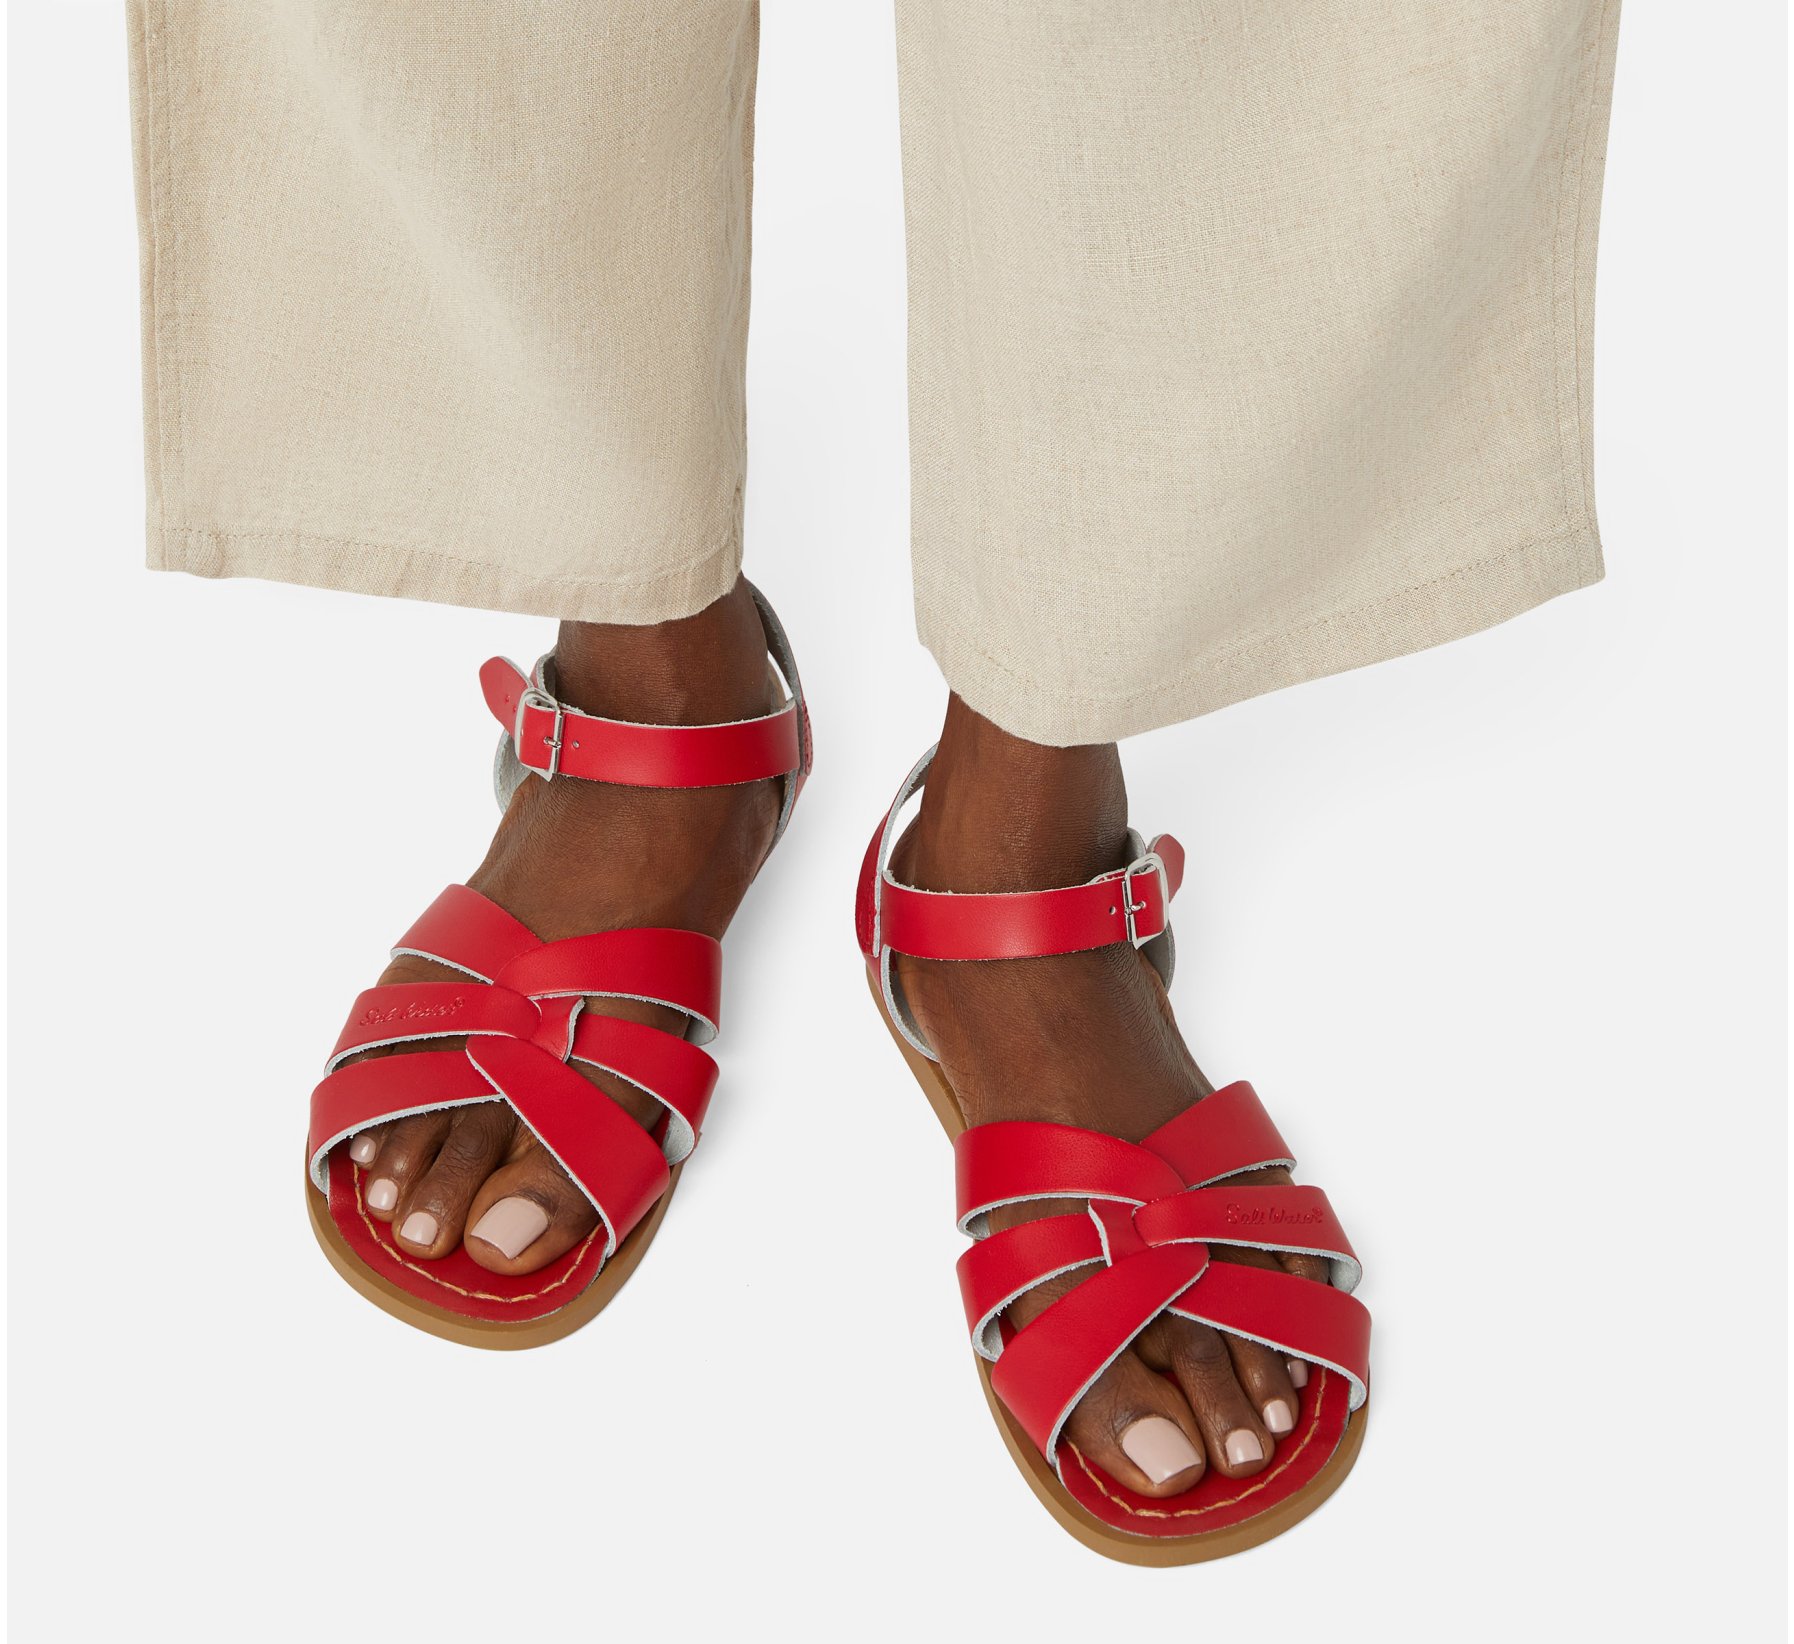 Original Merah - Salt Water Sandals